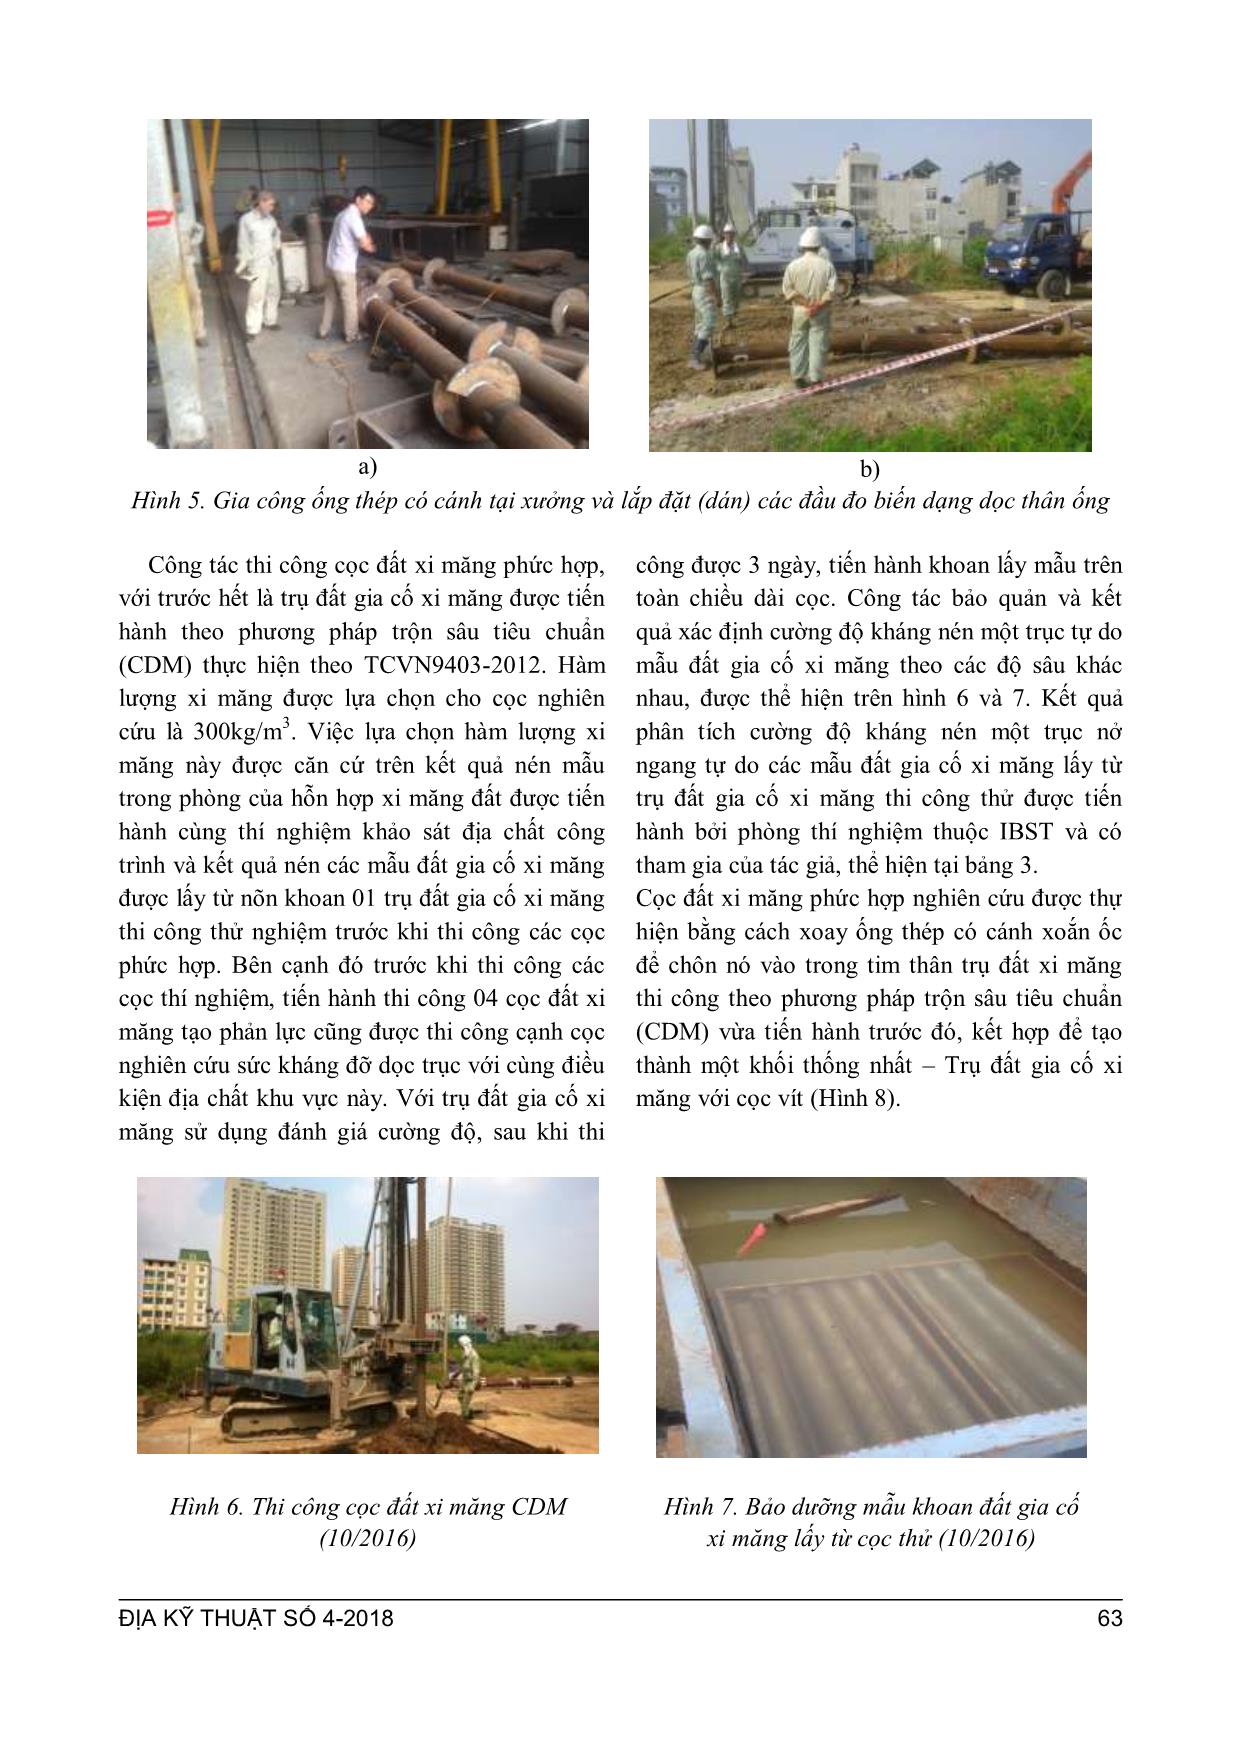 Nghiên cứu sức mang tải dọc trục của cọc phức hợp trụ đất xi măng kết hợp ống thép có cánh xoắn trang 5